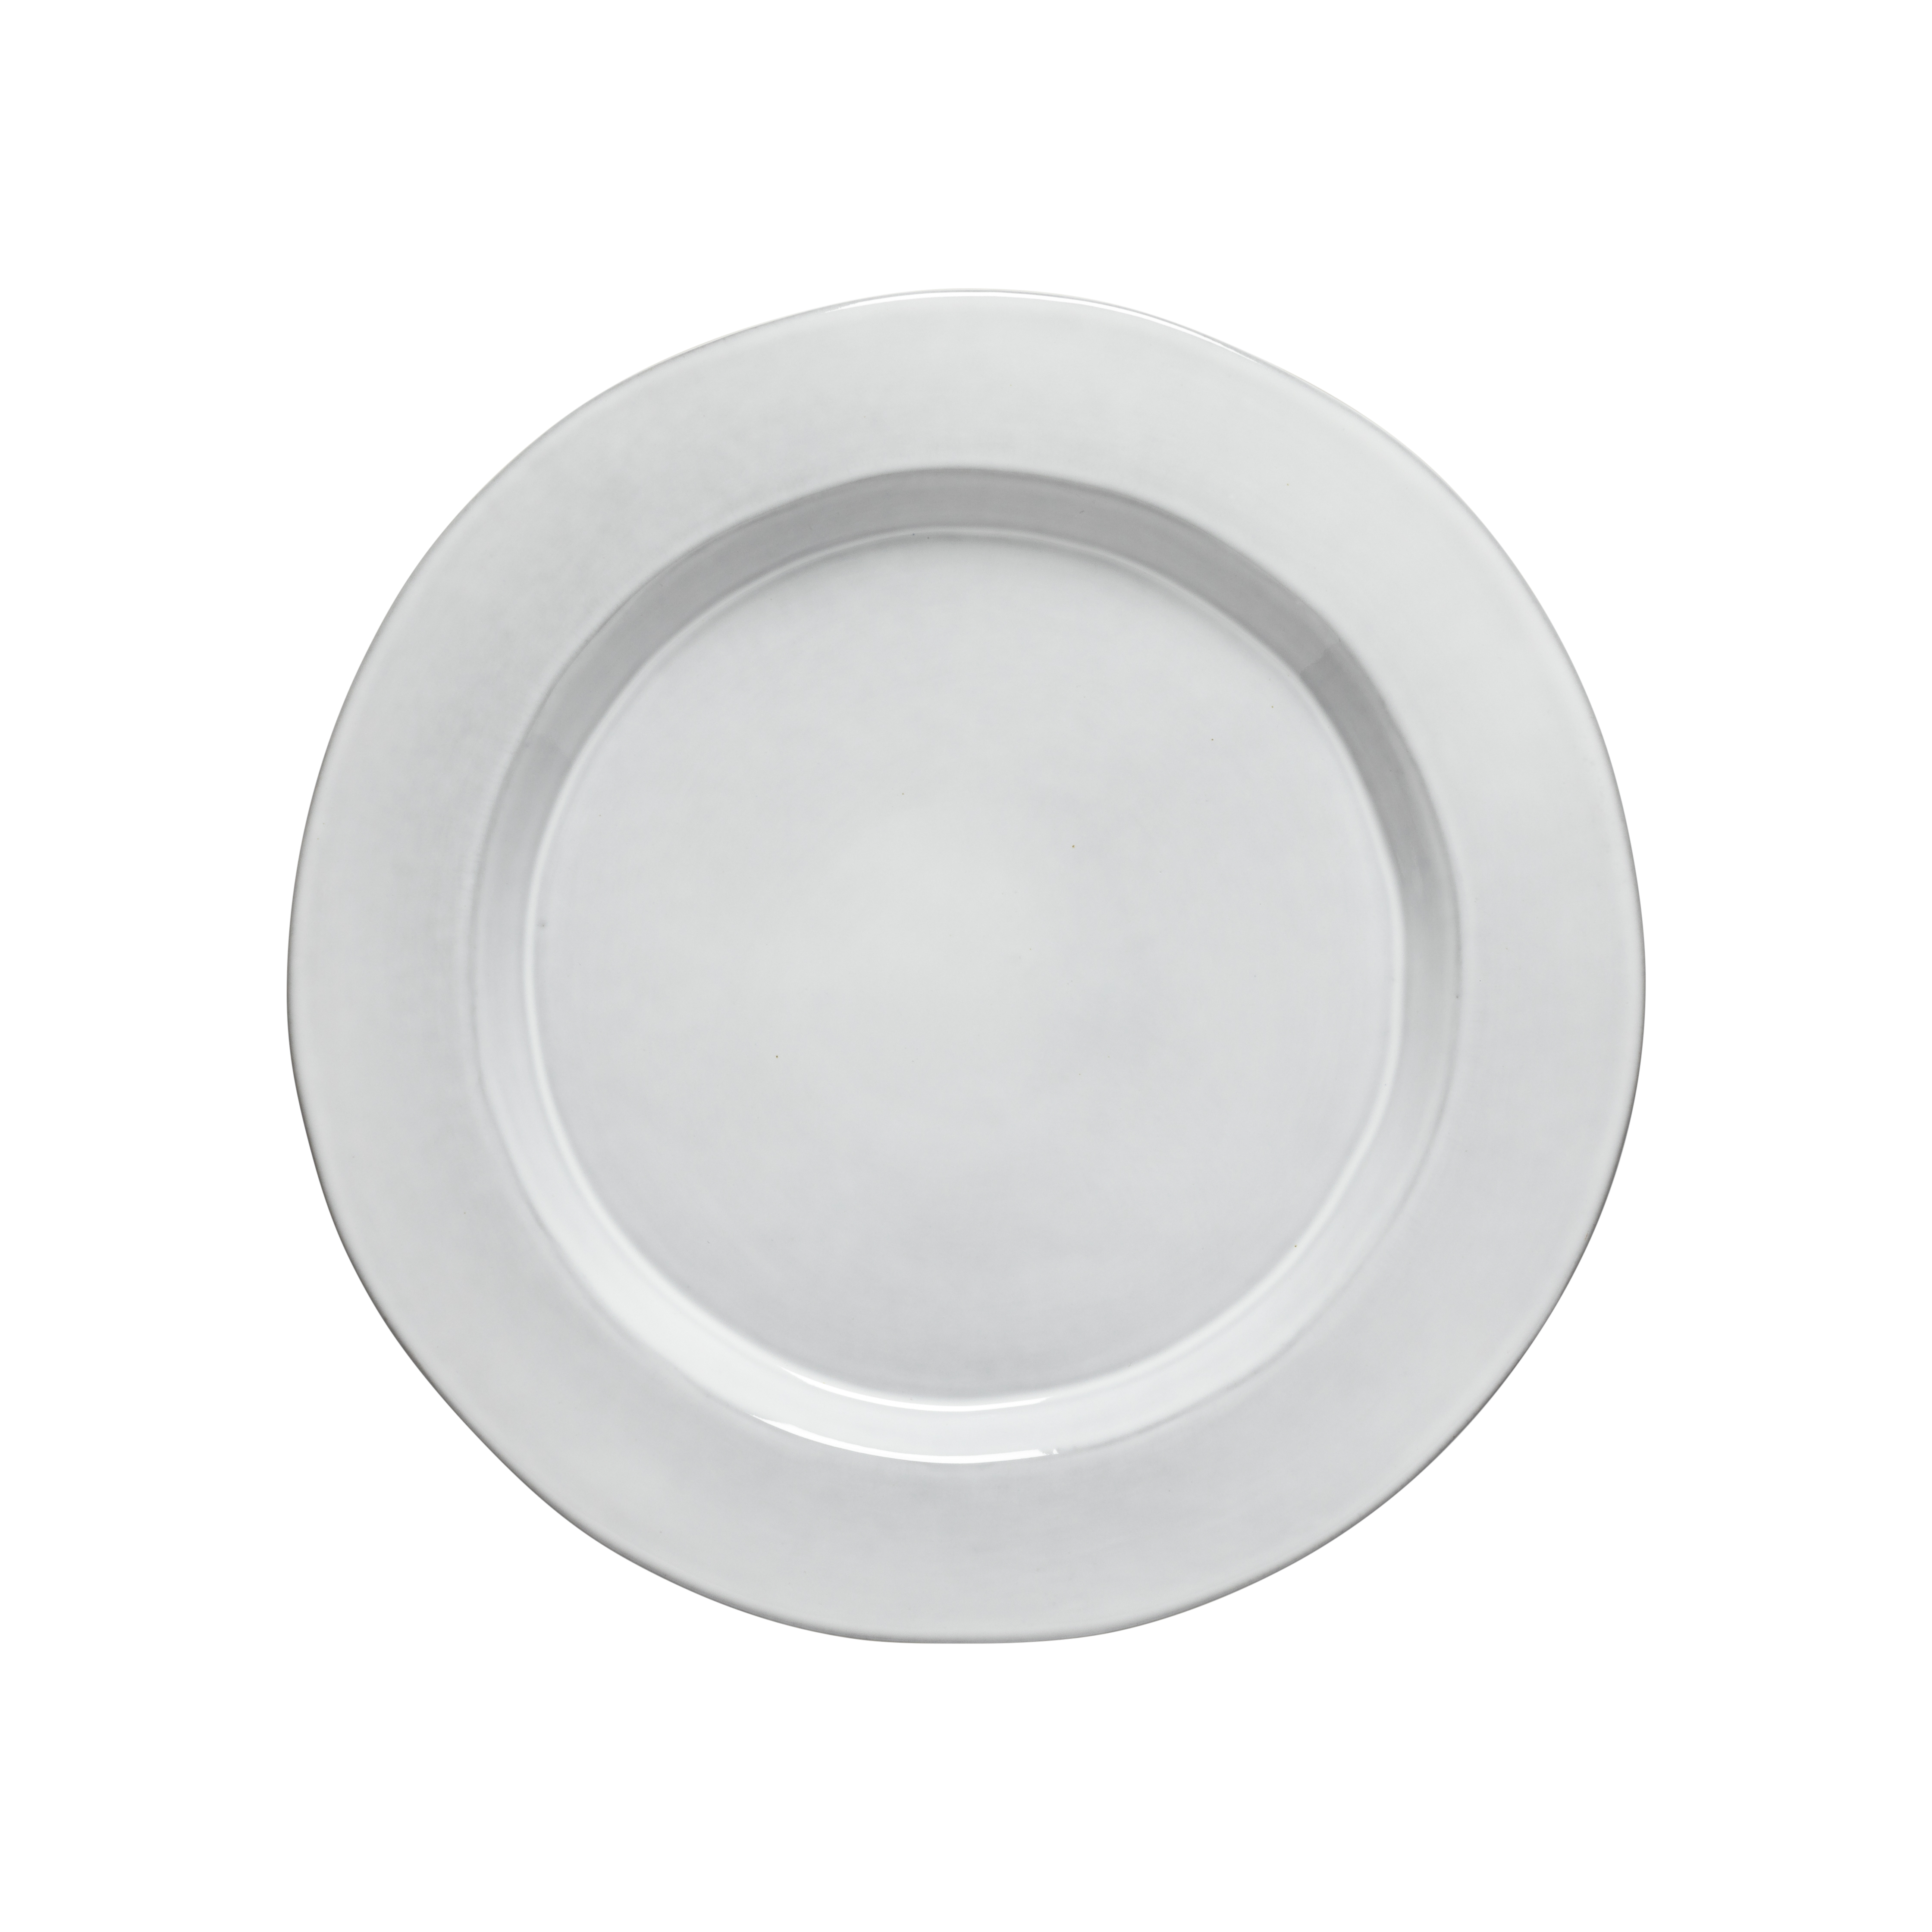 Plano White Dinner Plate 29cm Gift